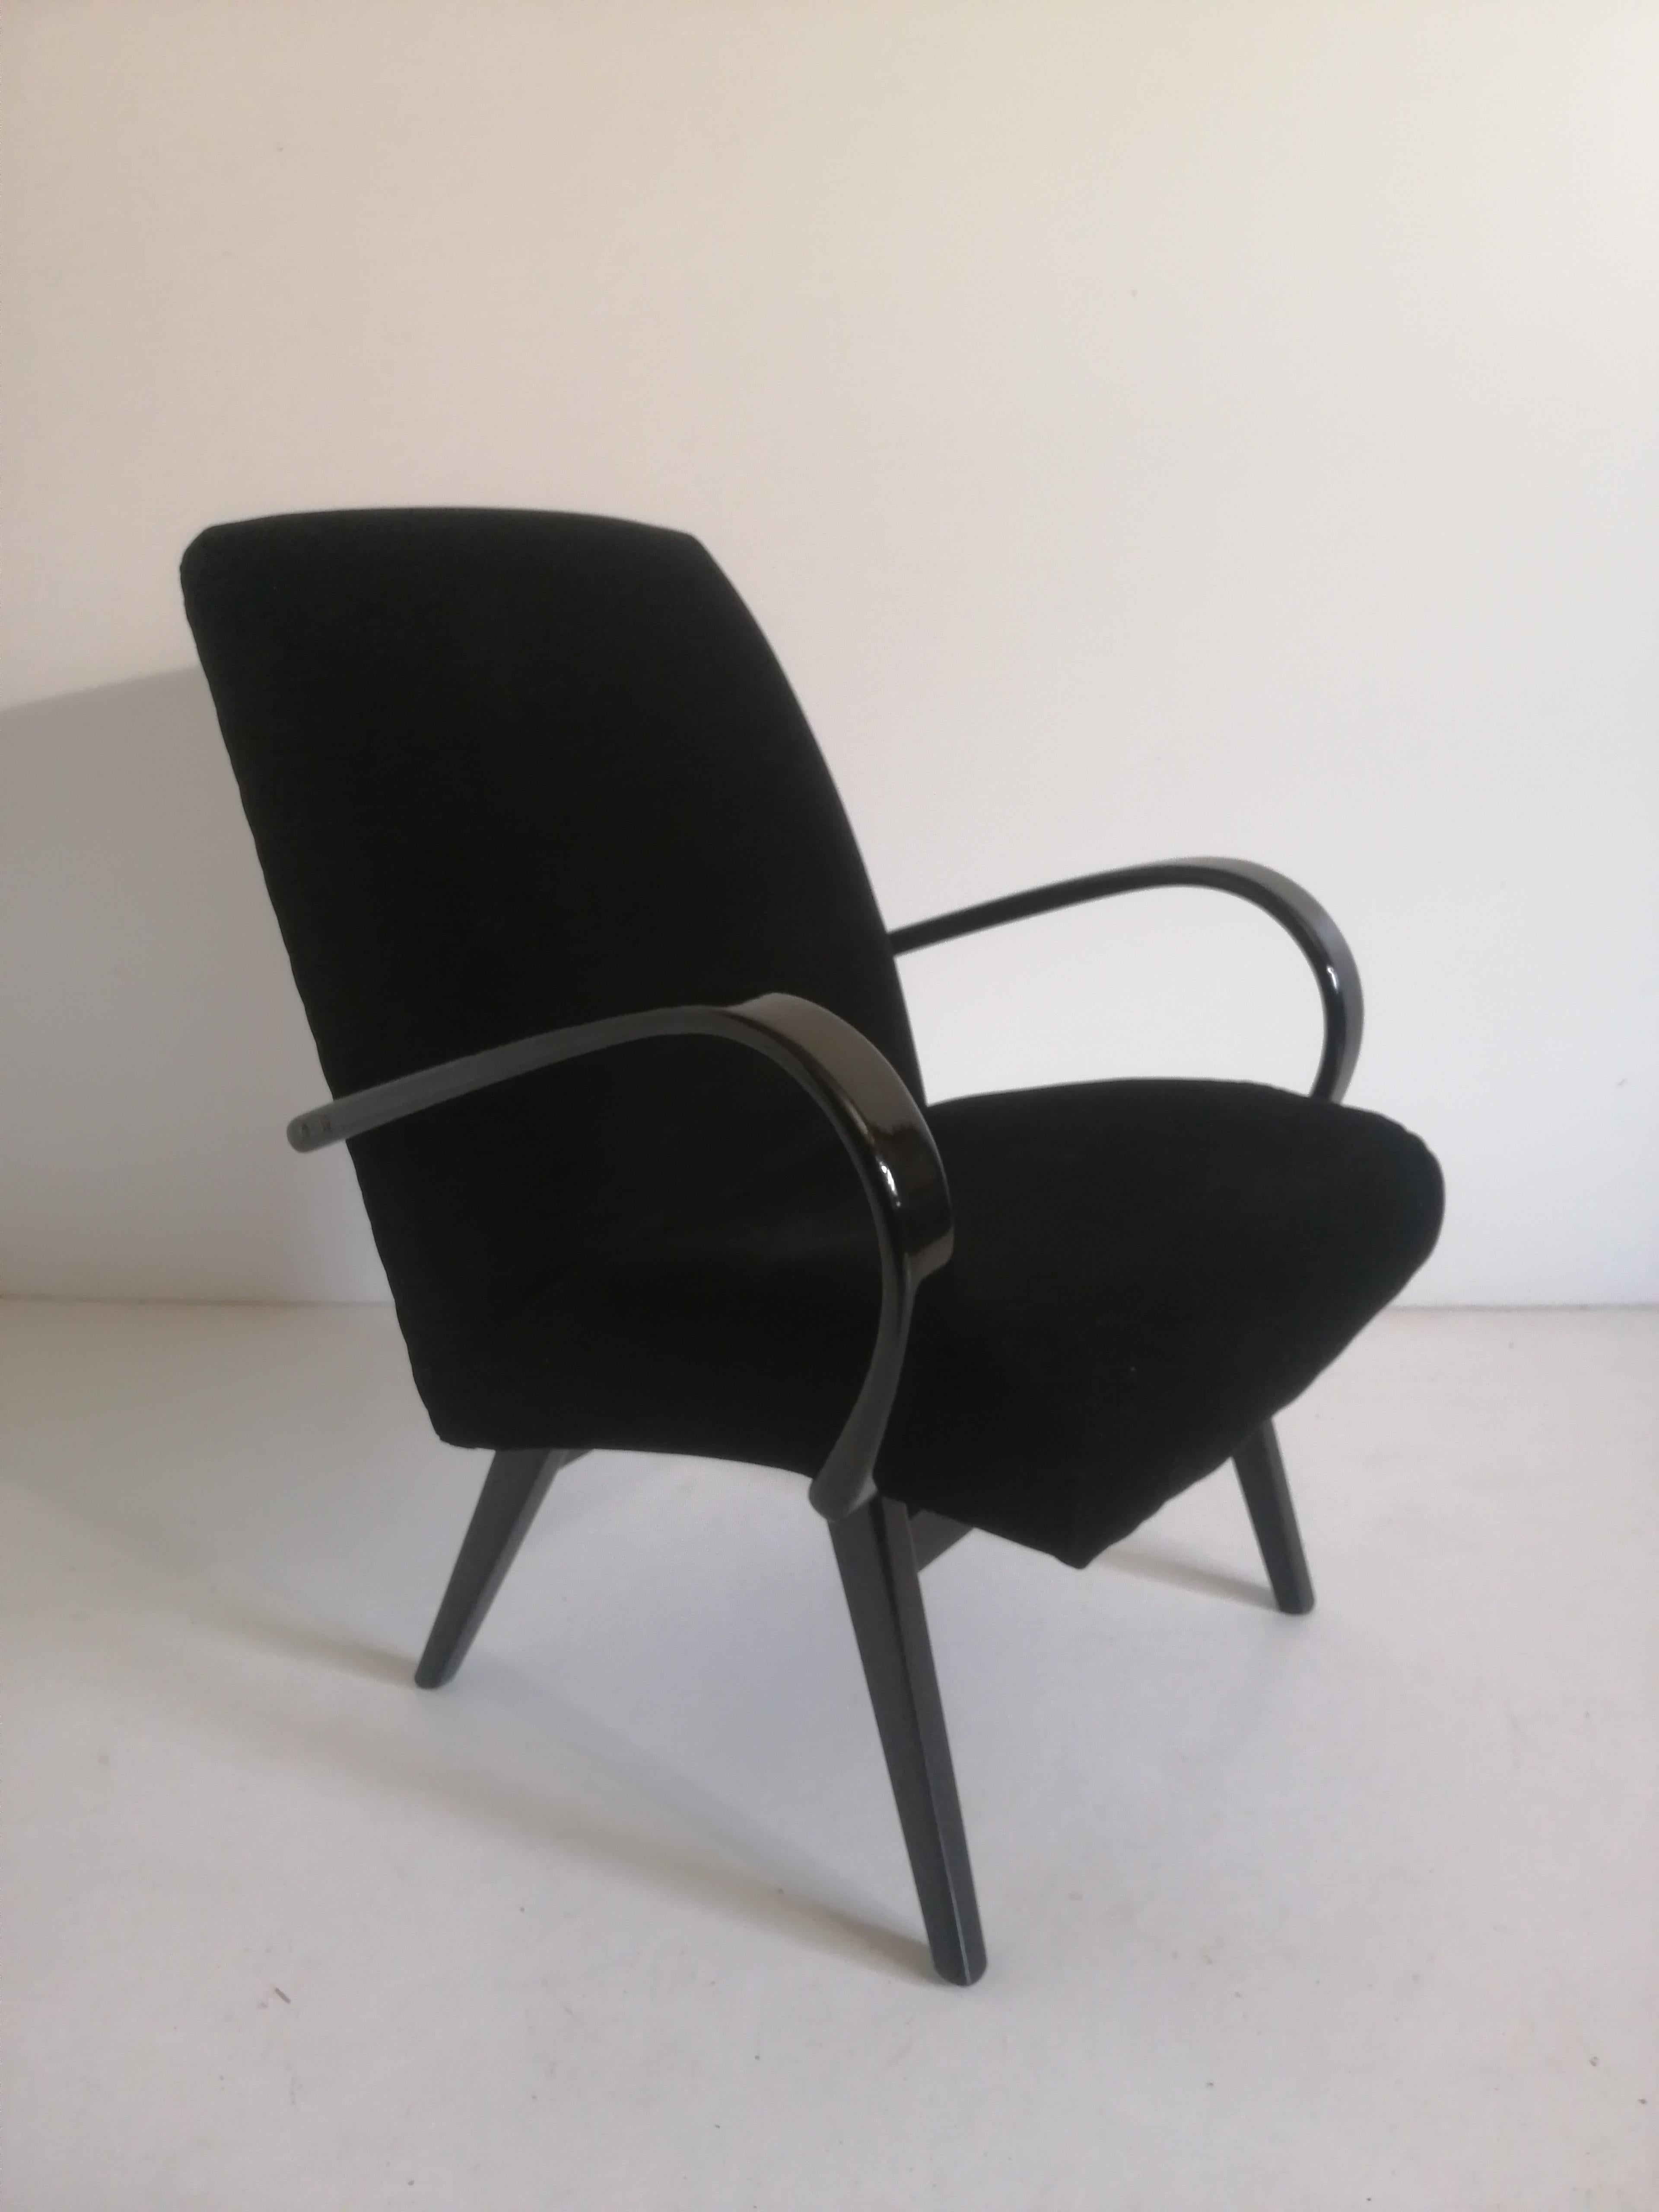 Art Deco Sessel von 1940, Tschechische Republik.
Entworfen von dem berühmten tschechischen Designer Jindrich Halabala, der zu den bedeutendsten Schöpfern der Moderne zählt. Den Höhepunkt seiner Karriere erlebte er in den 1930er und 1940er Jahren,